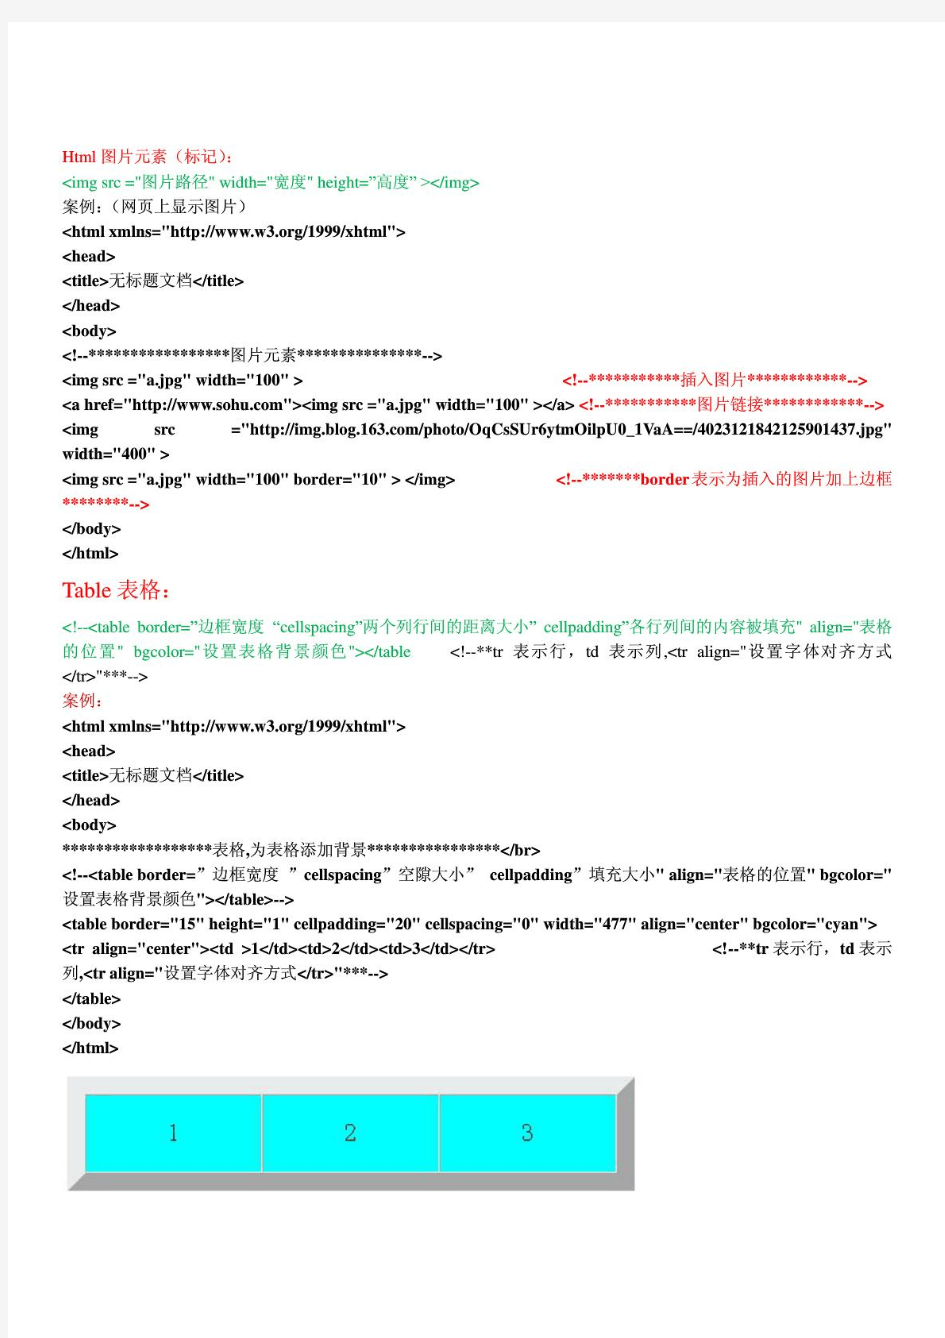 韩顺平轻松搞定网页设计html+(DIV+CSS)+javascript视频笔记(全)